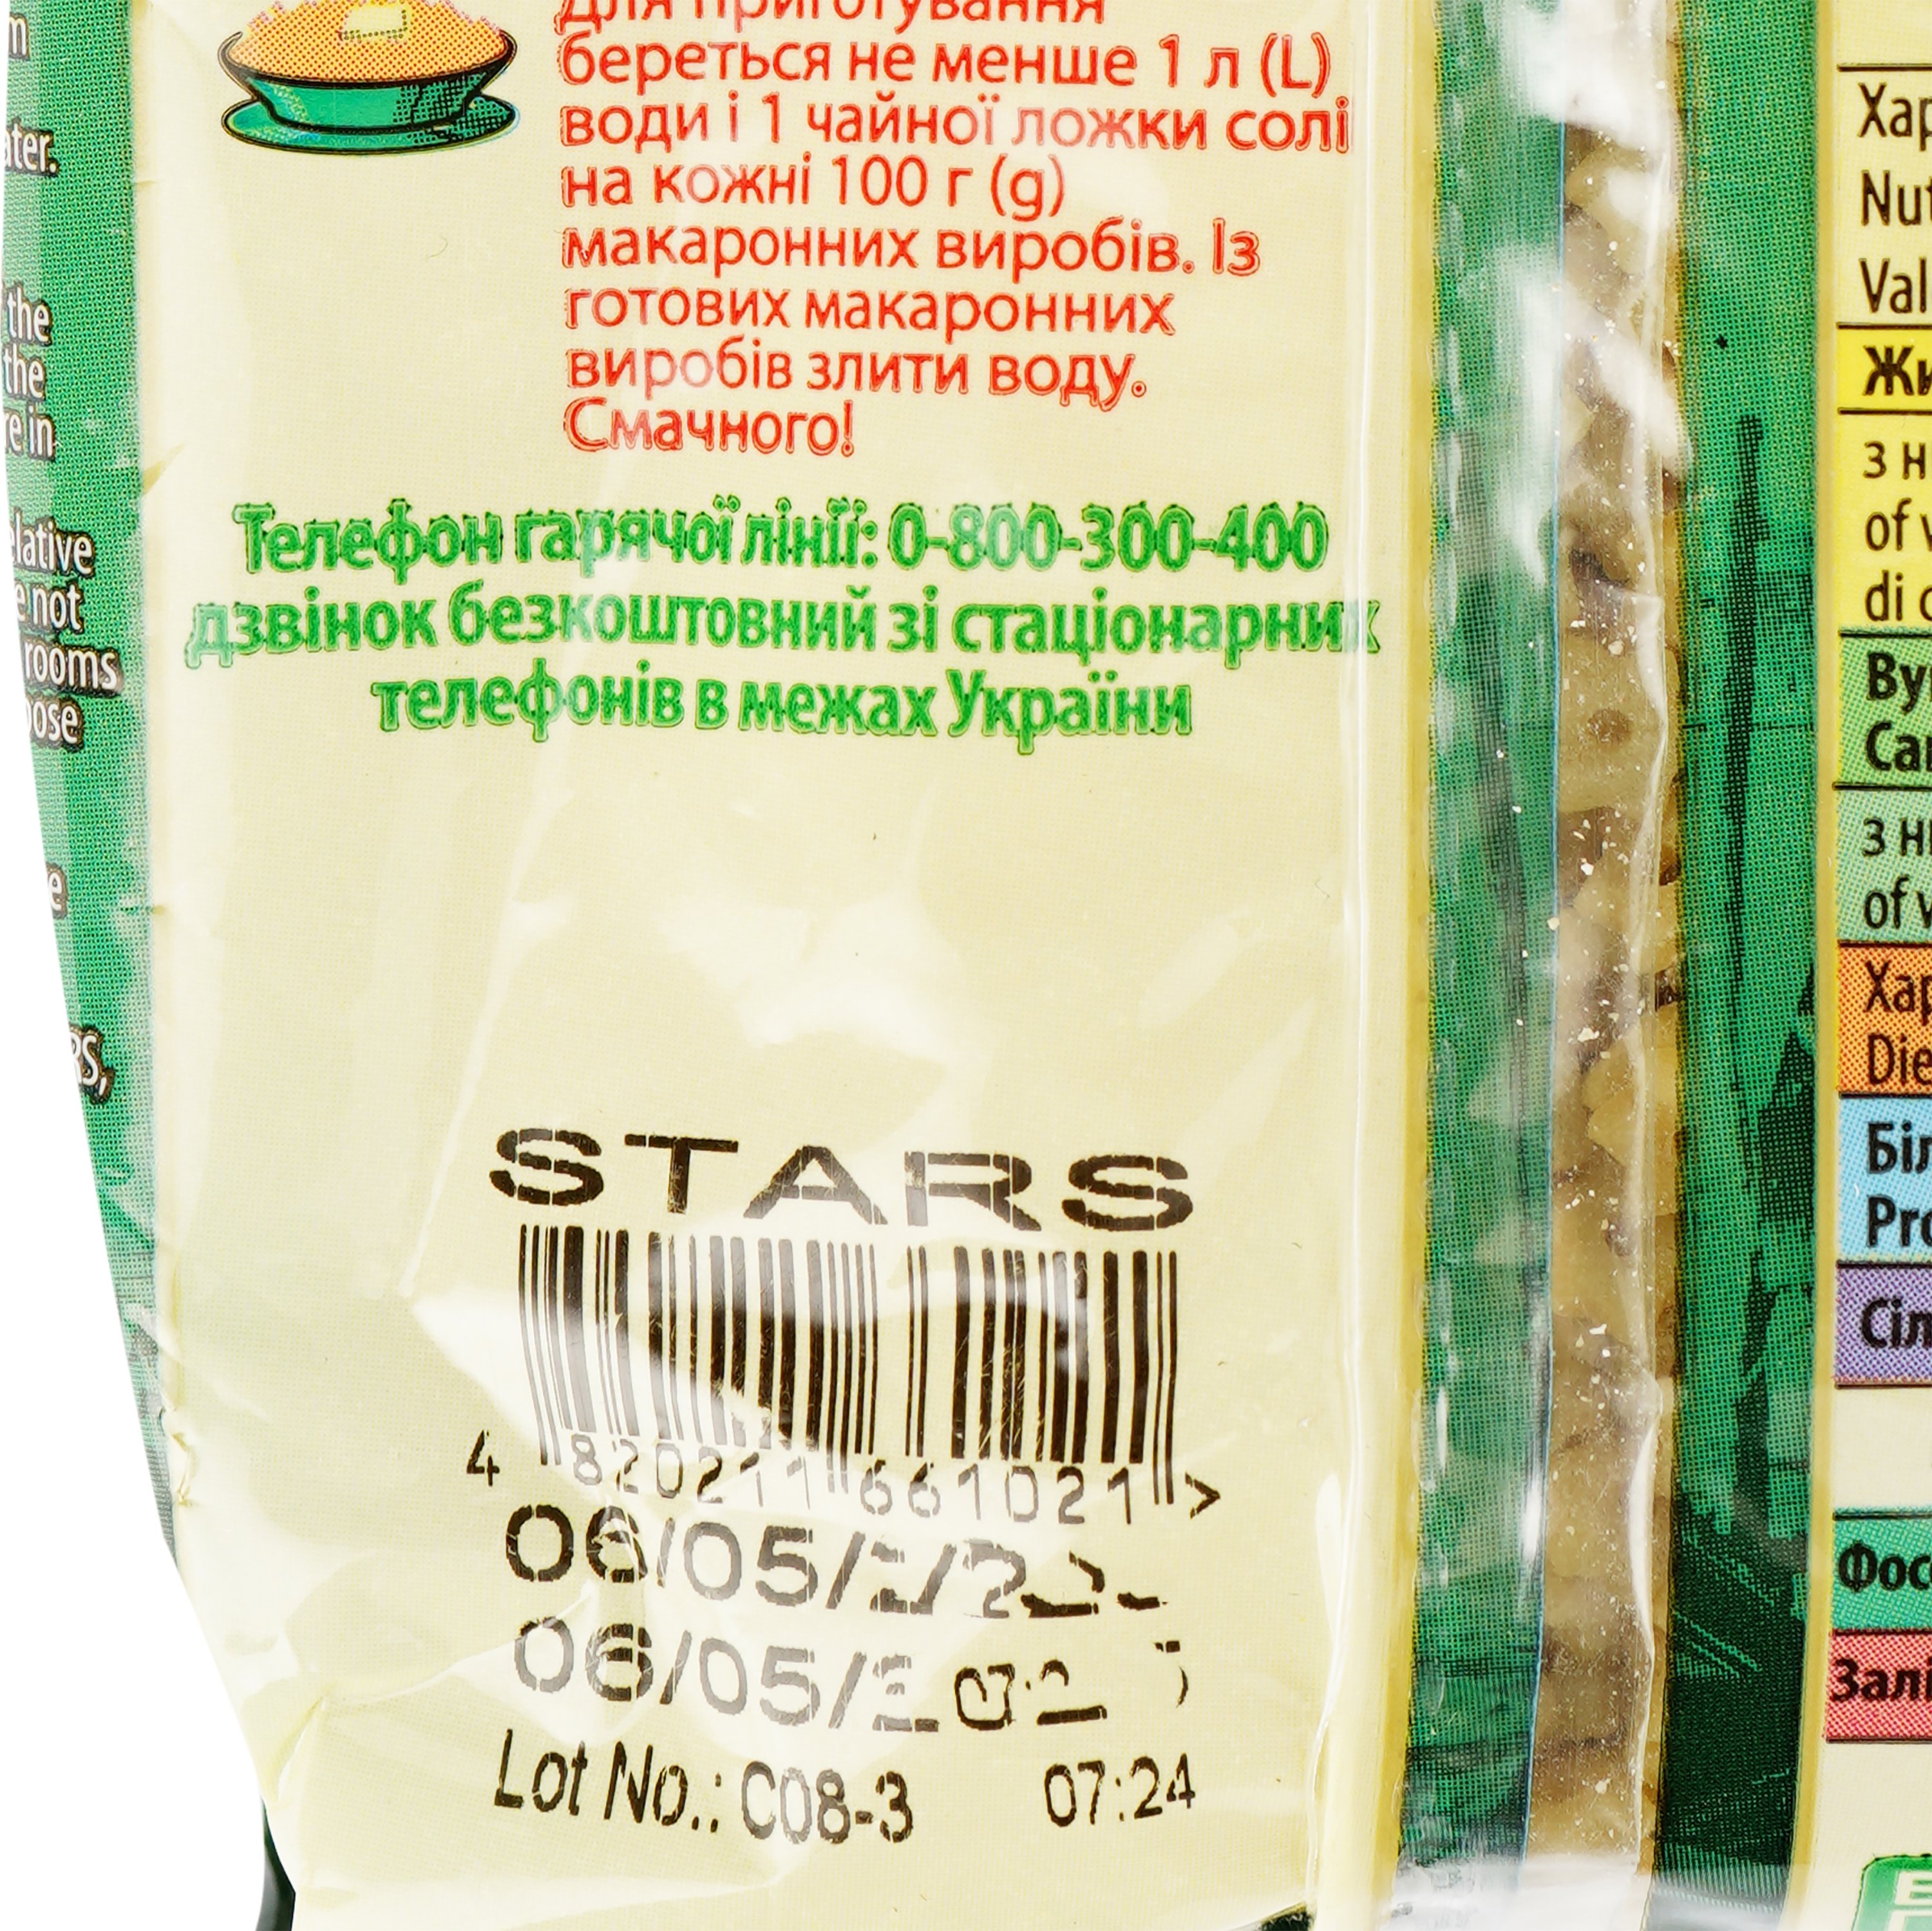 Макаронные изделия La Pasta суповые звездочки 400 г (724018) - фото 4